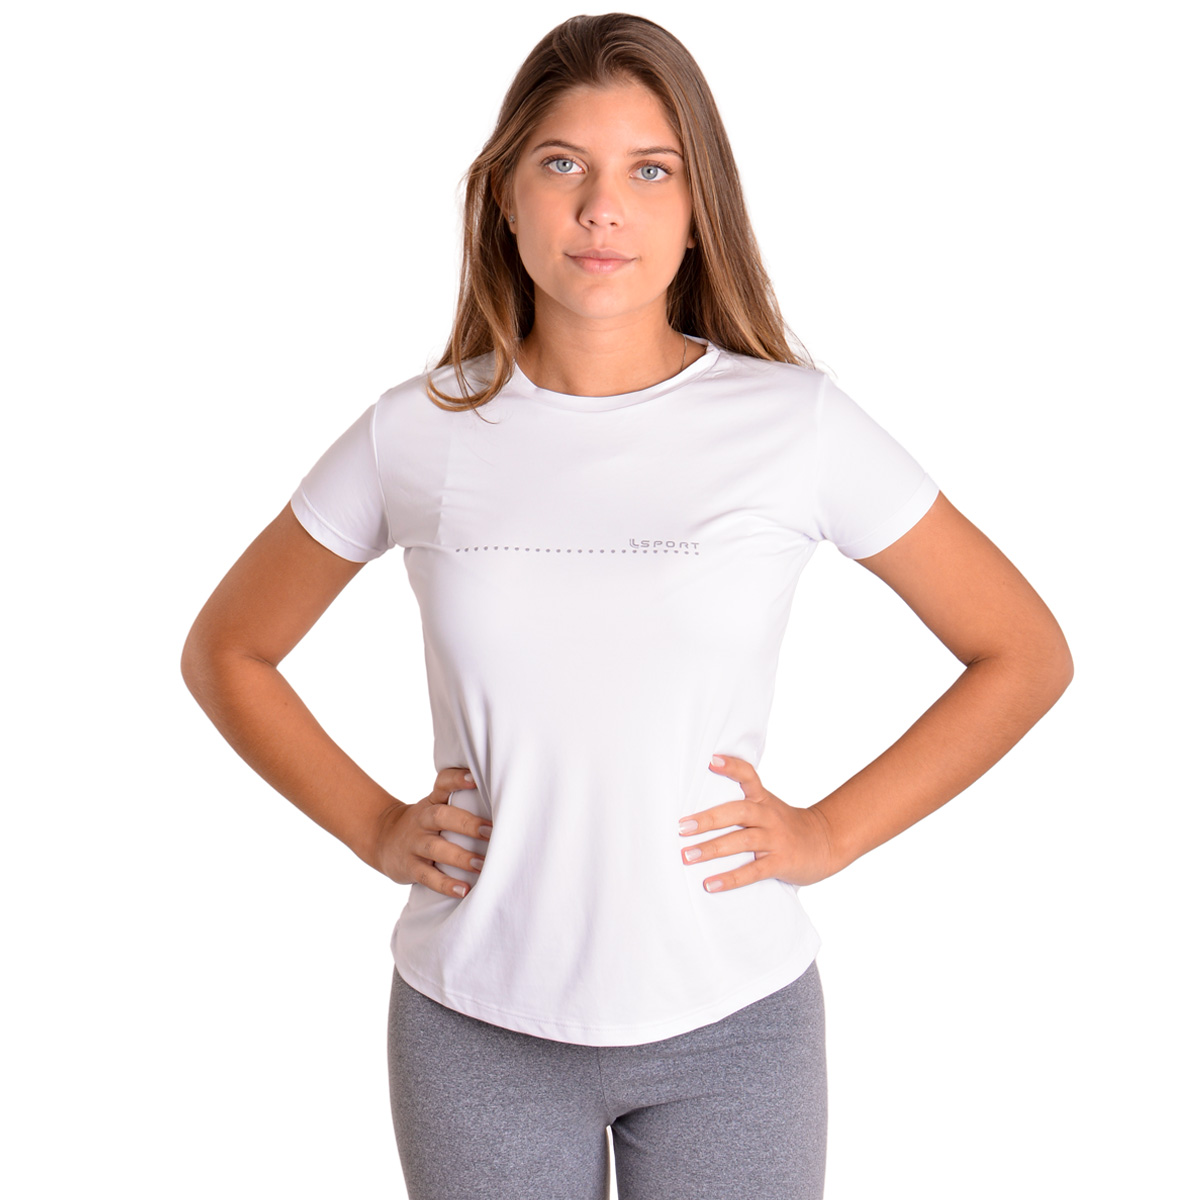 Camiseta feminina para academia e corrida com proteção solar Lupo